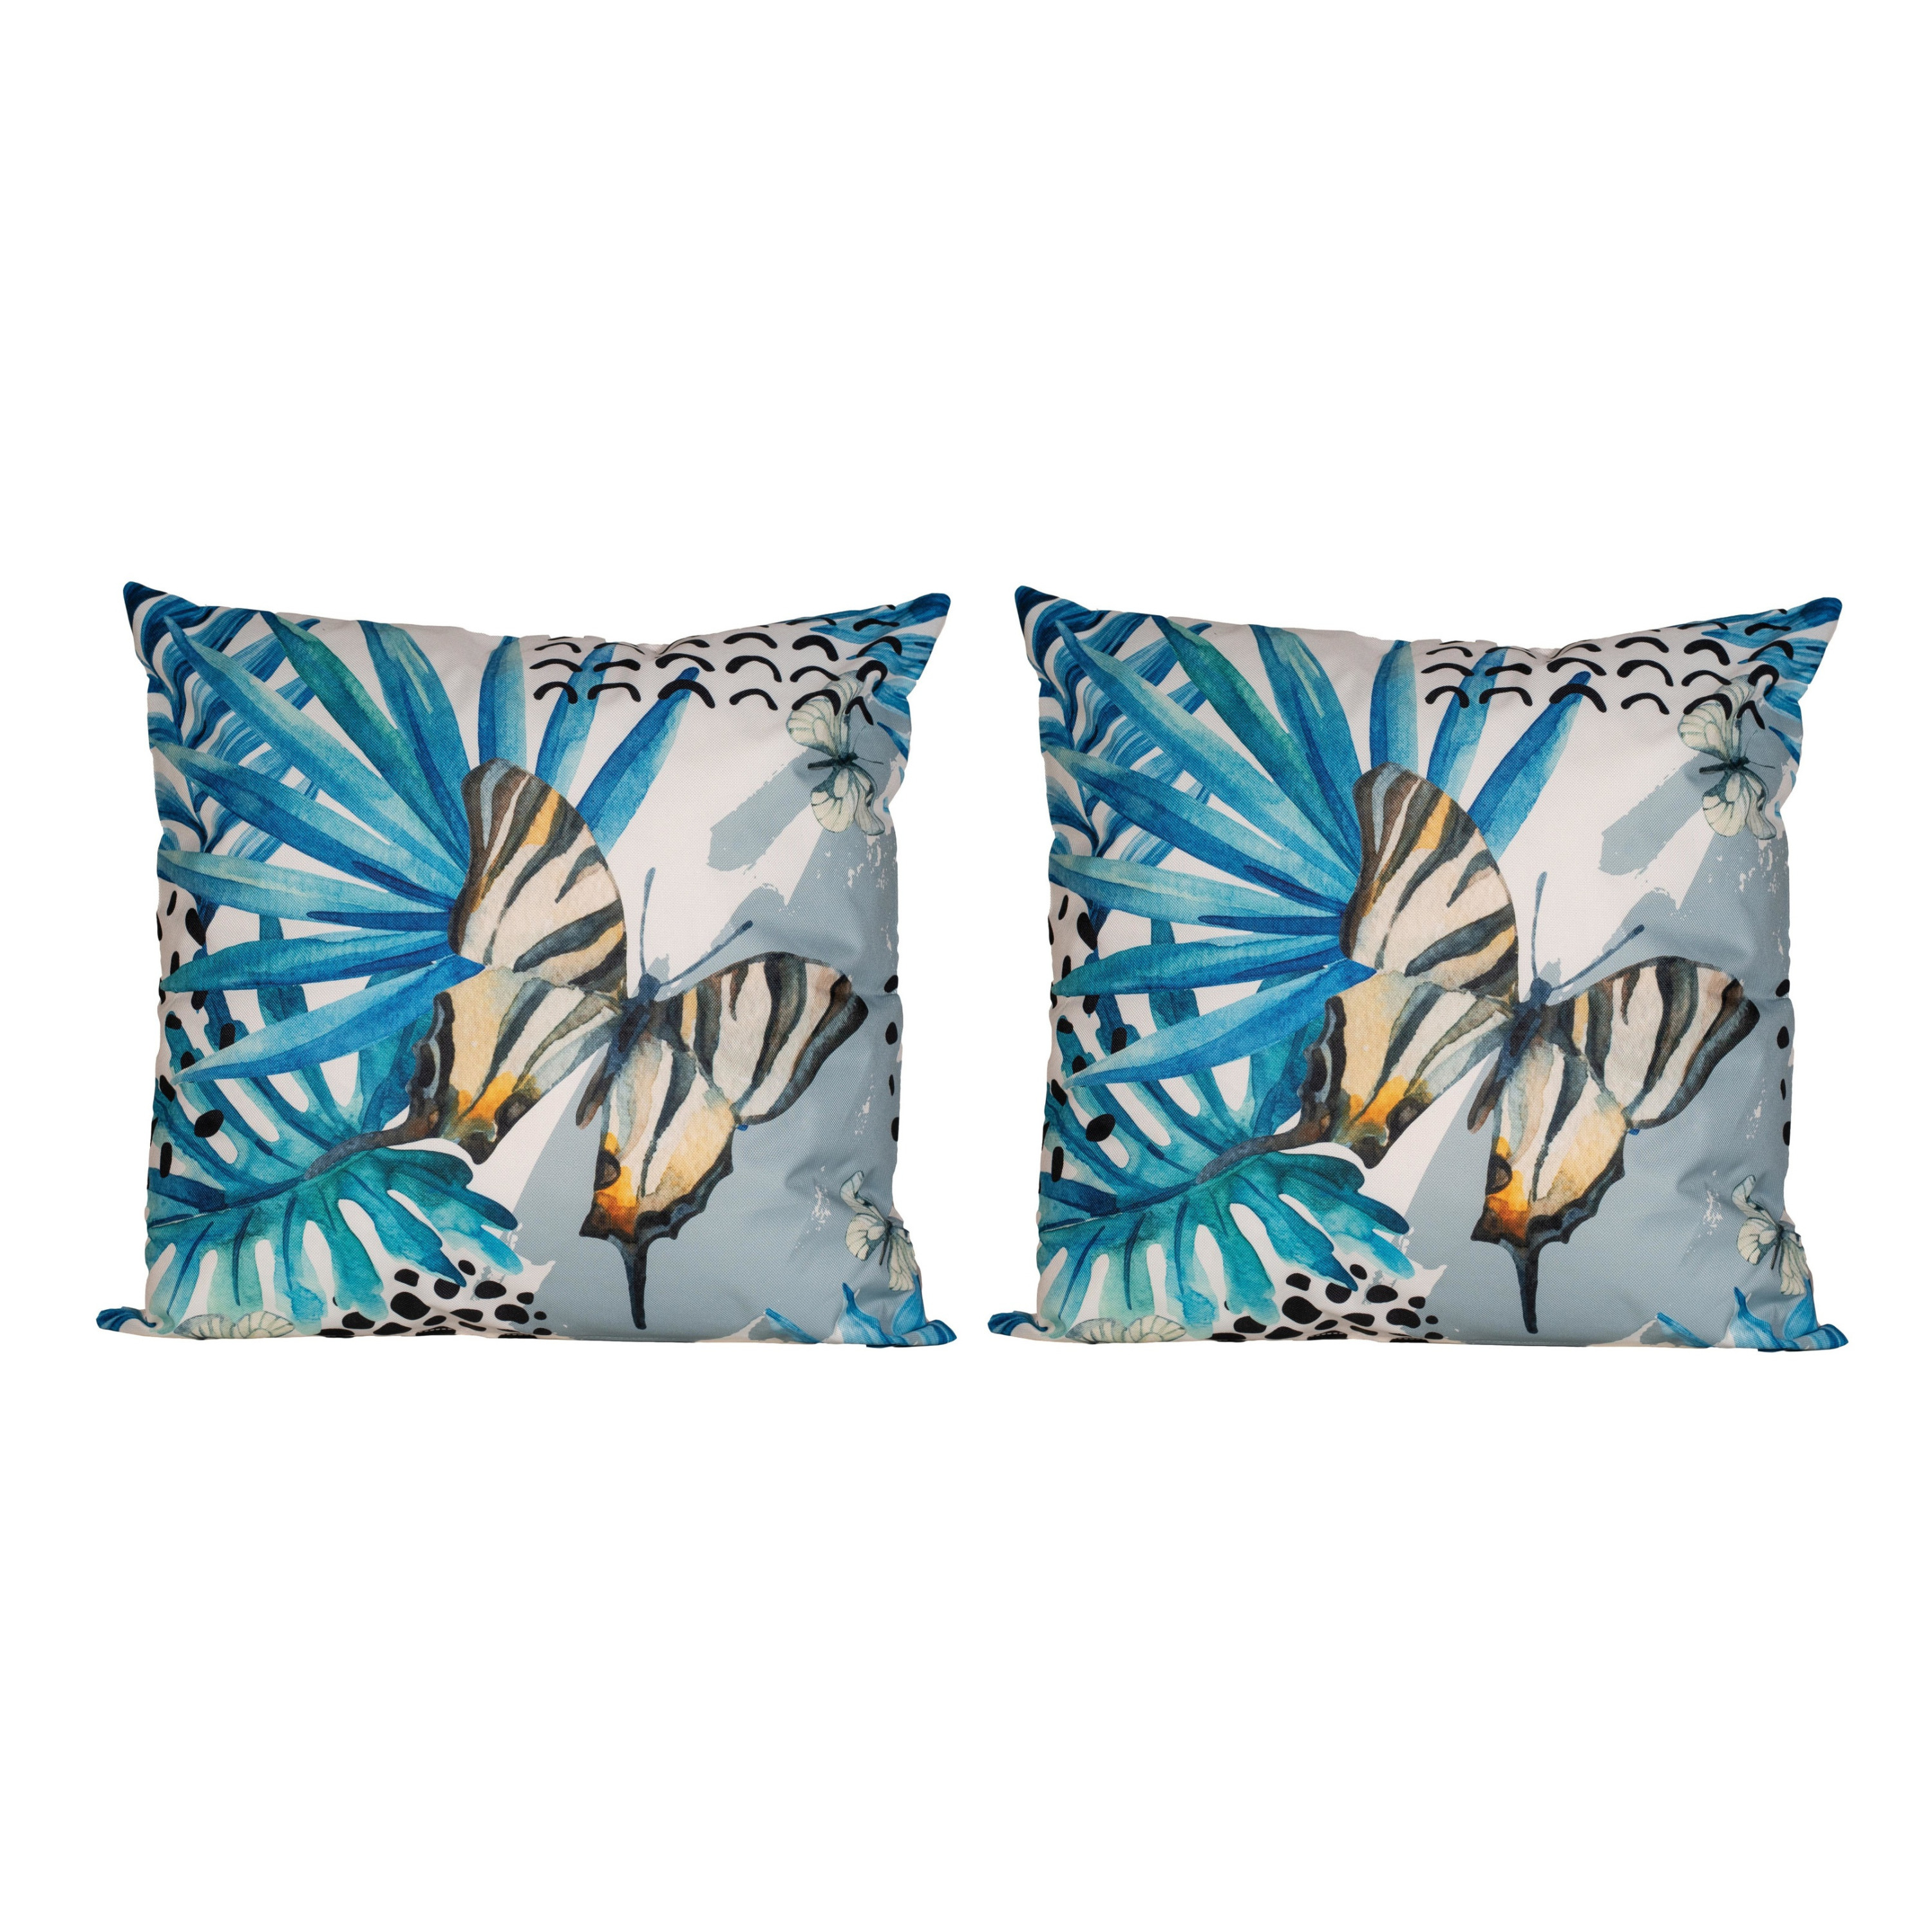 4x Bank-sier kussens met blauwe palm plant-bladeren print voor binnen en buiten 45 x 45 cm